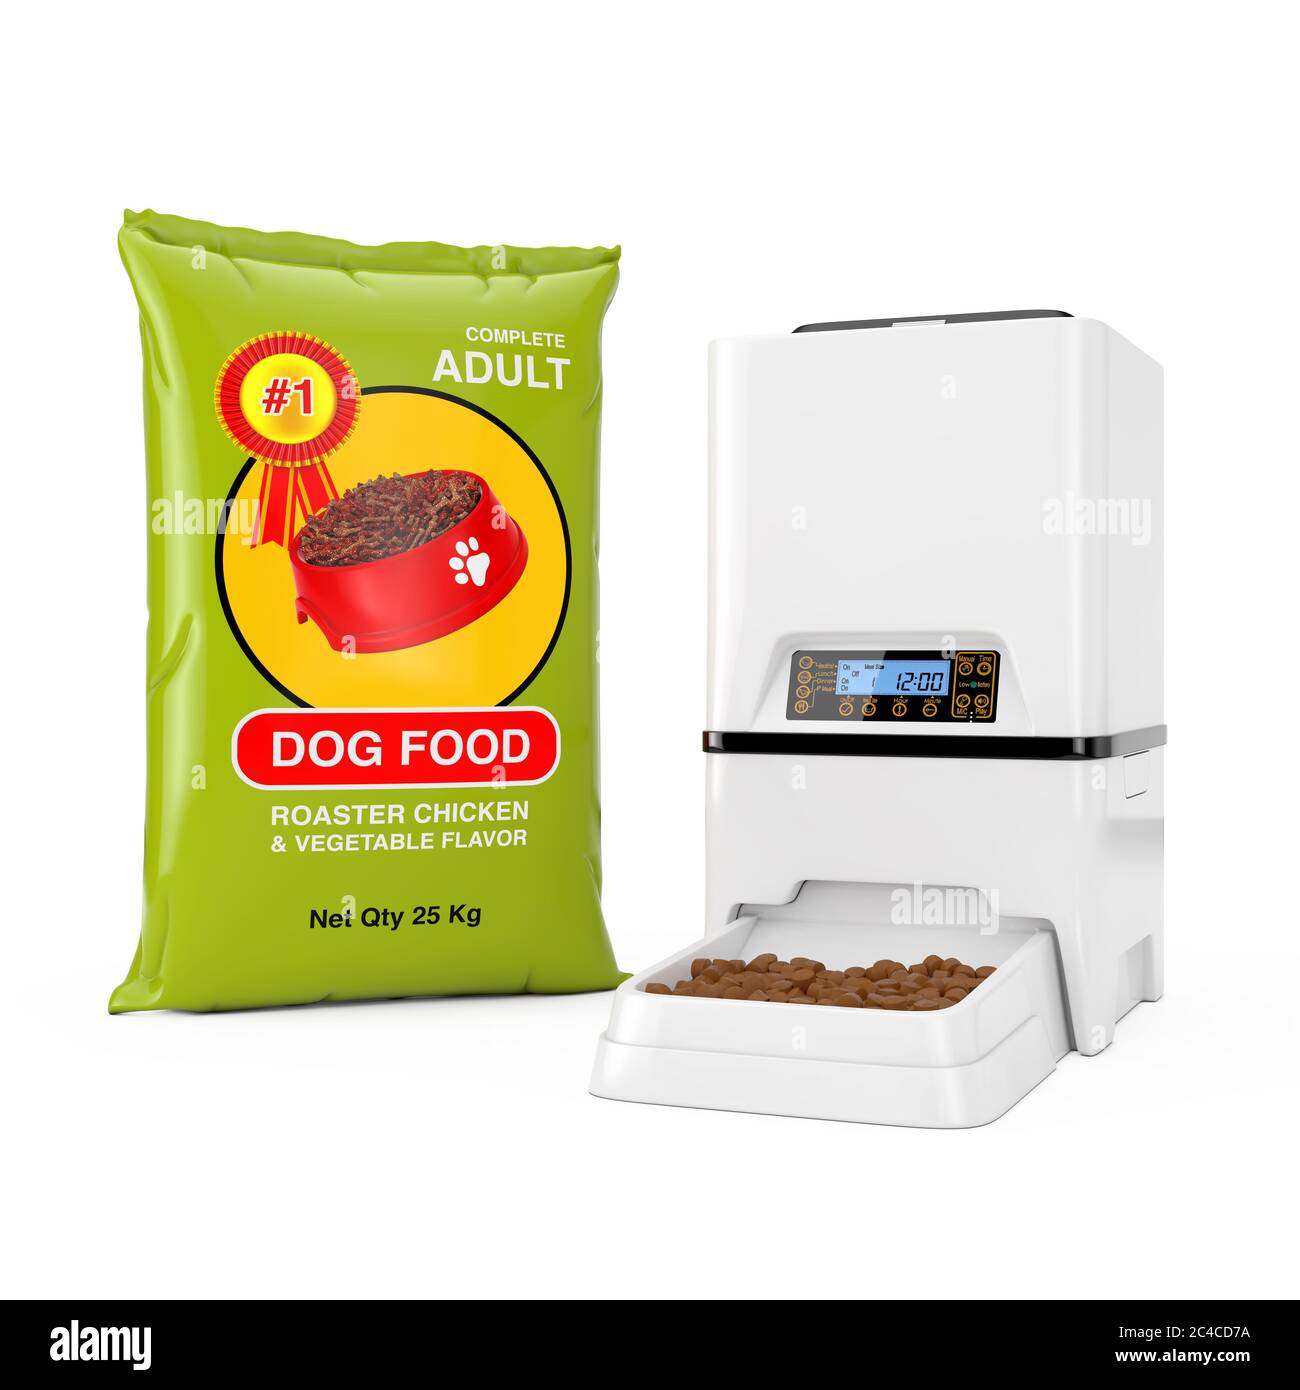 Sacs alimentaires pour chiens Designnear automatique électronique numérique PET stockage de nourriture sèche distributeur de repas sur un fond blanc. Rendu 3d Banque D'Images